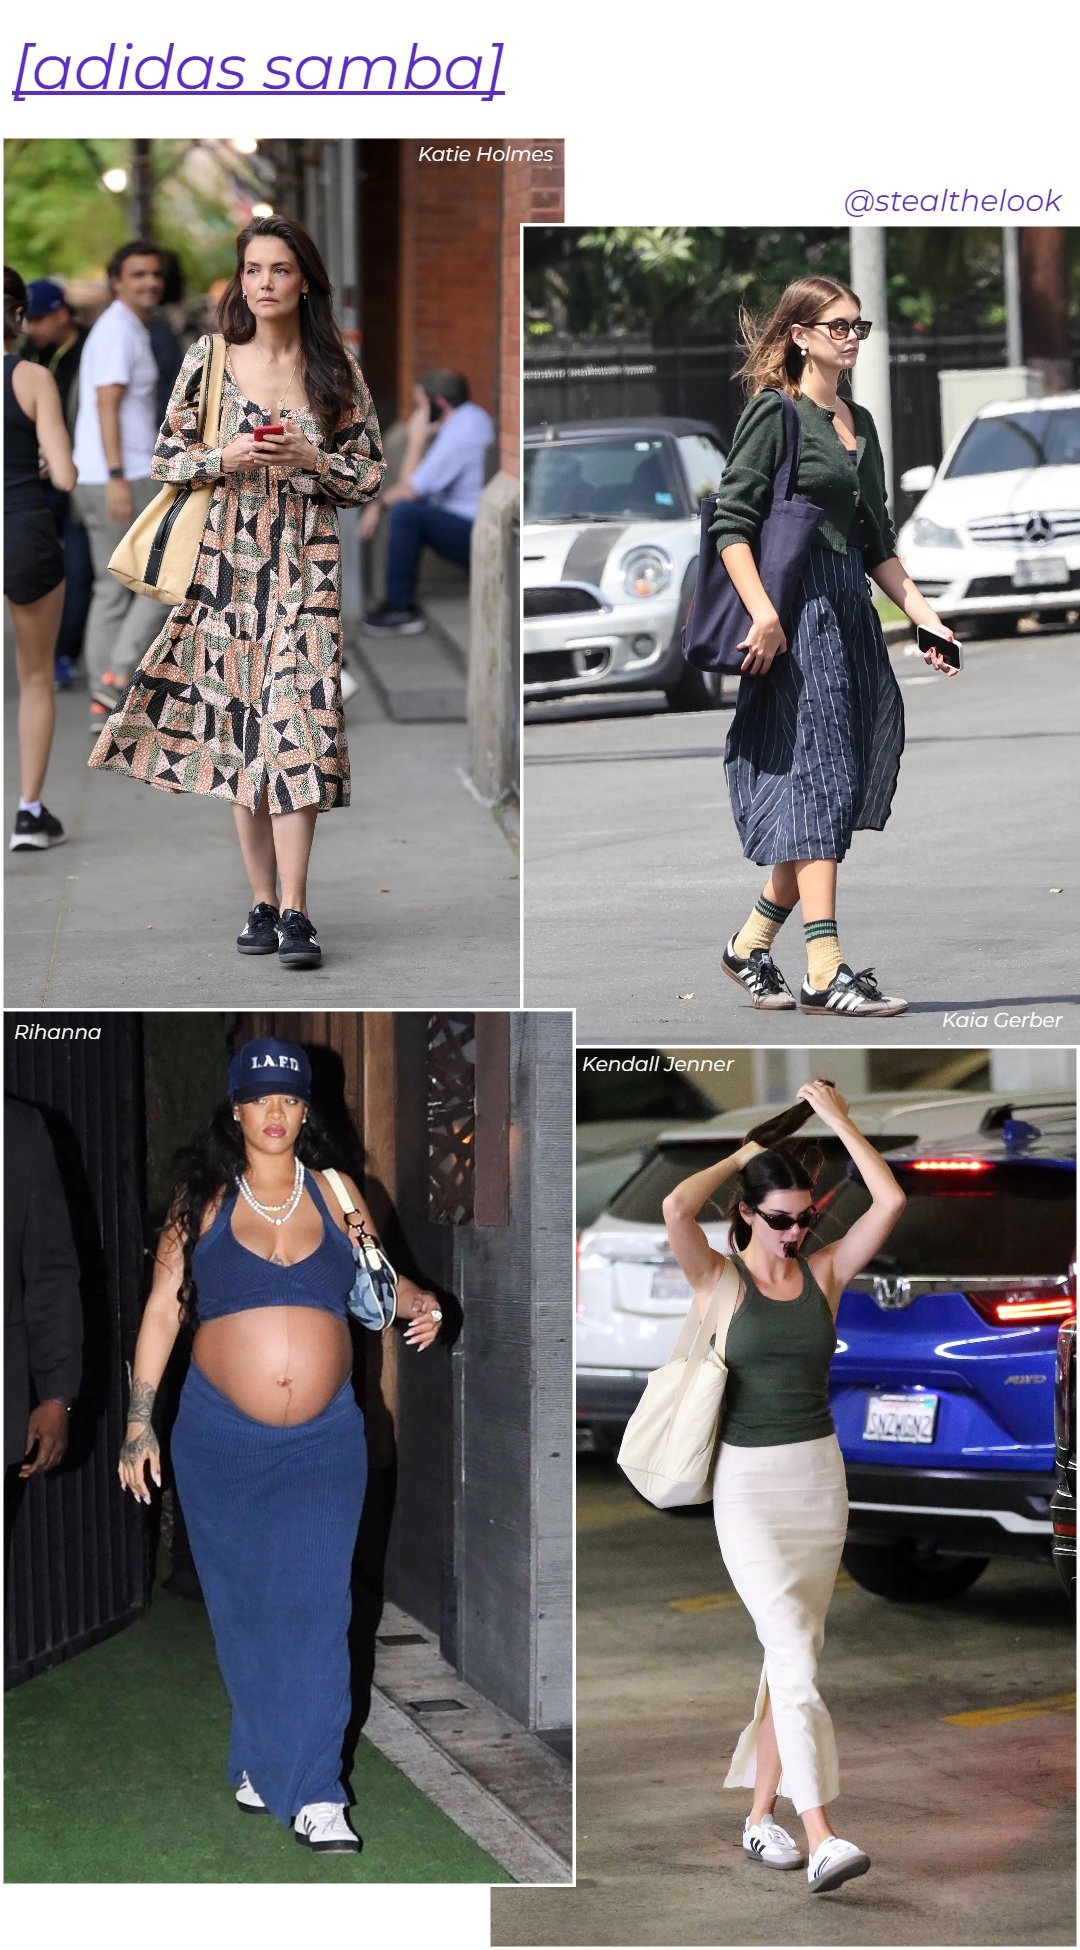 Rihanna, Katie Holmes, Kendall Jenner e Kaia Gerber - looks variados - tendências de verão - verão - colagem com quatro celebridades diferentes - https://stealthelook.com.br